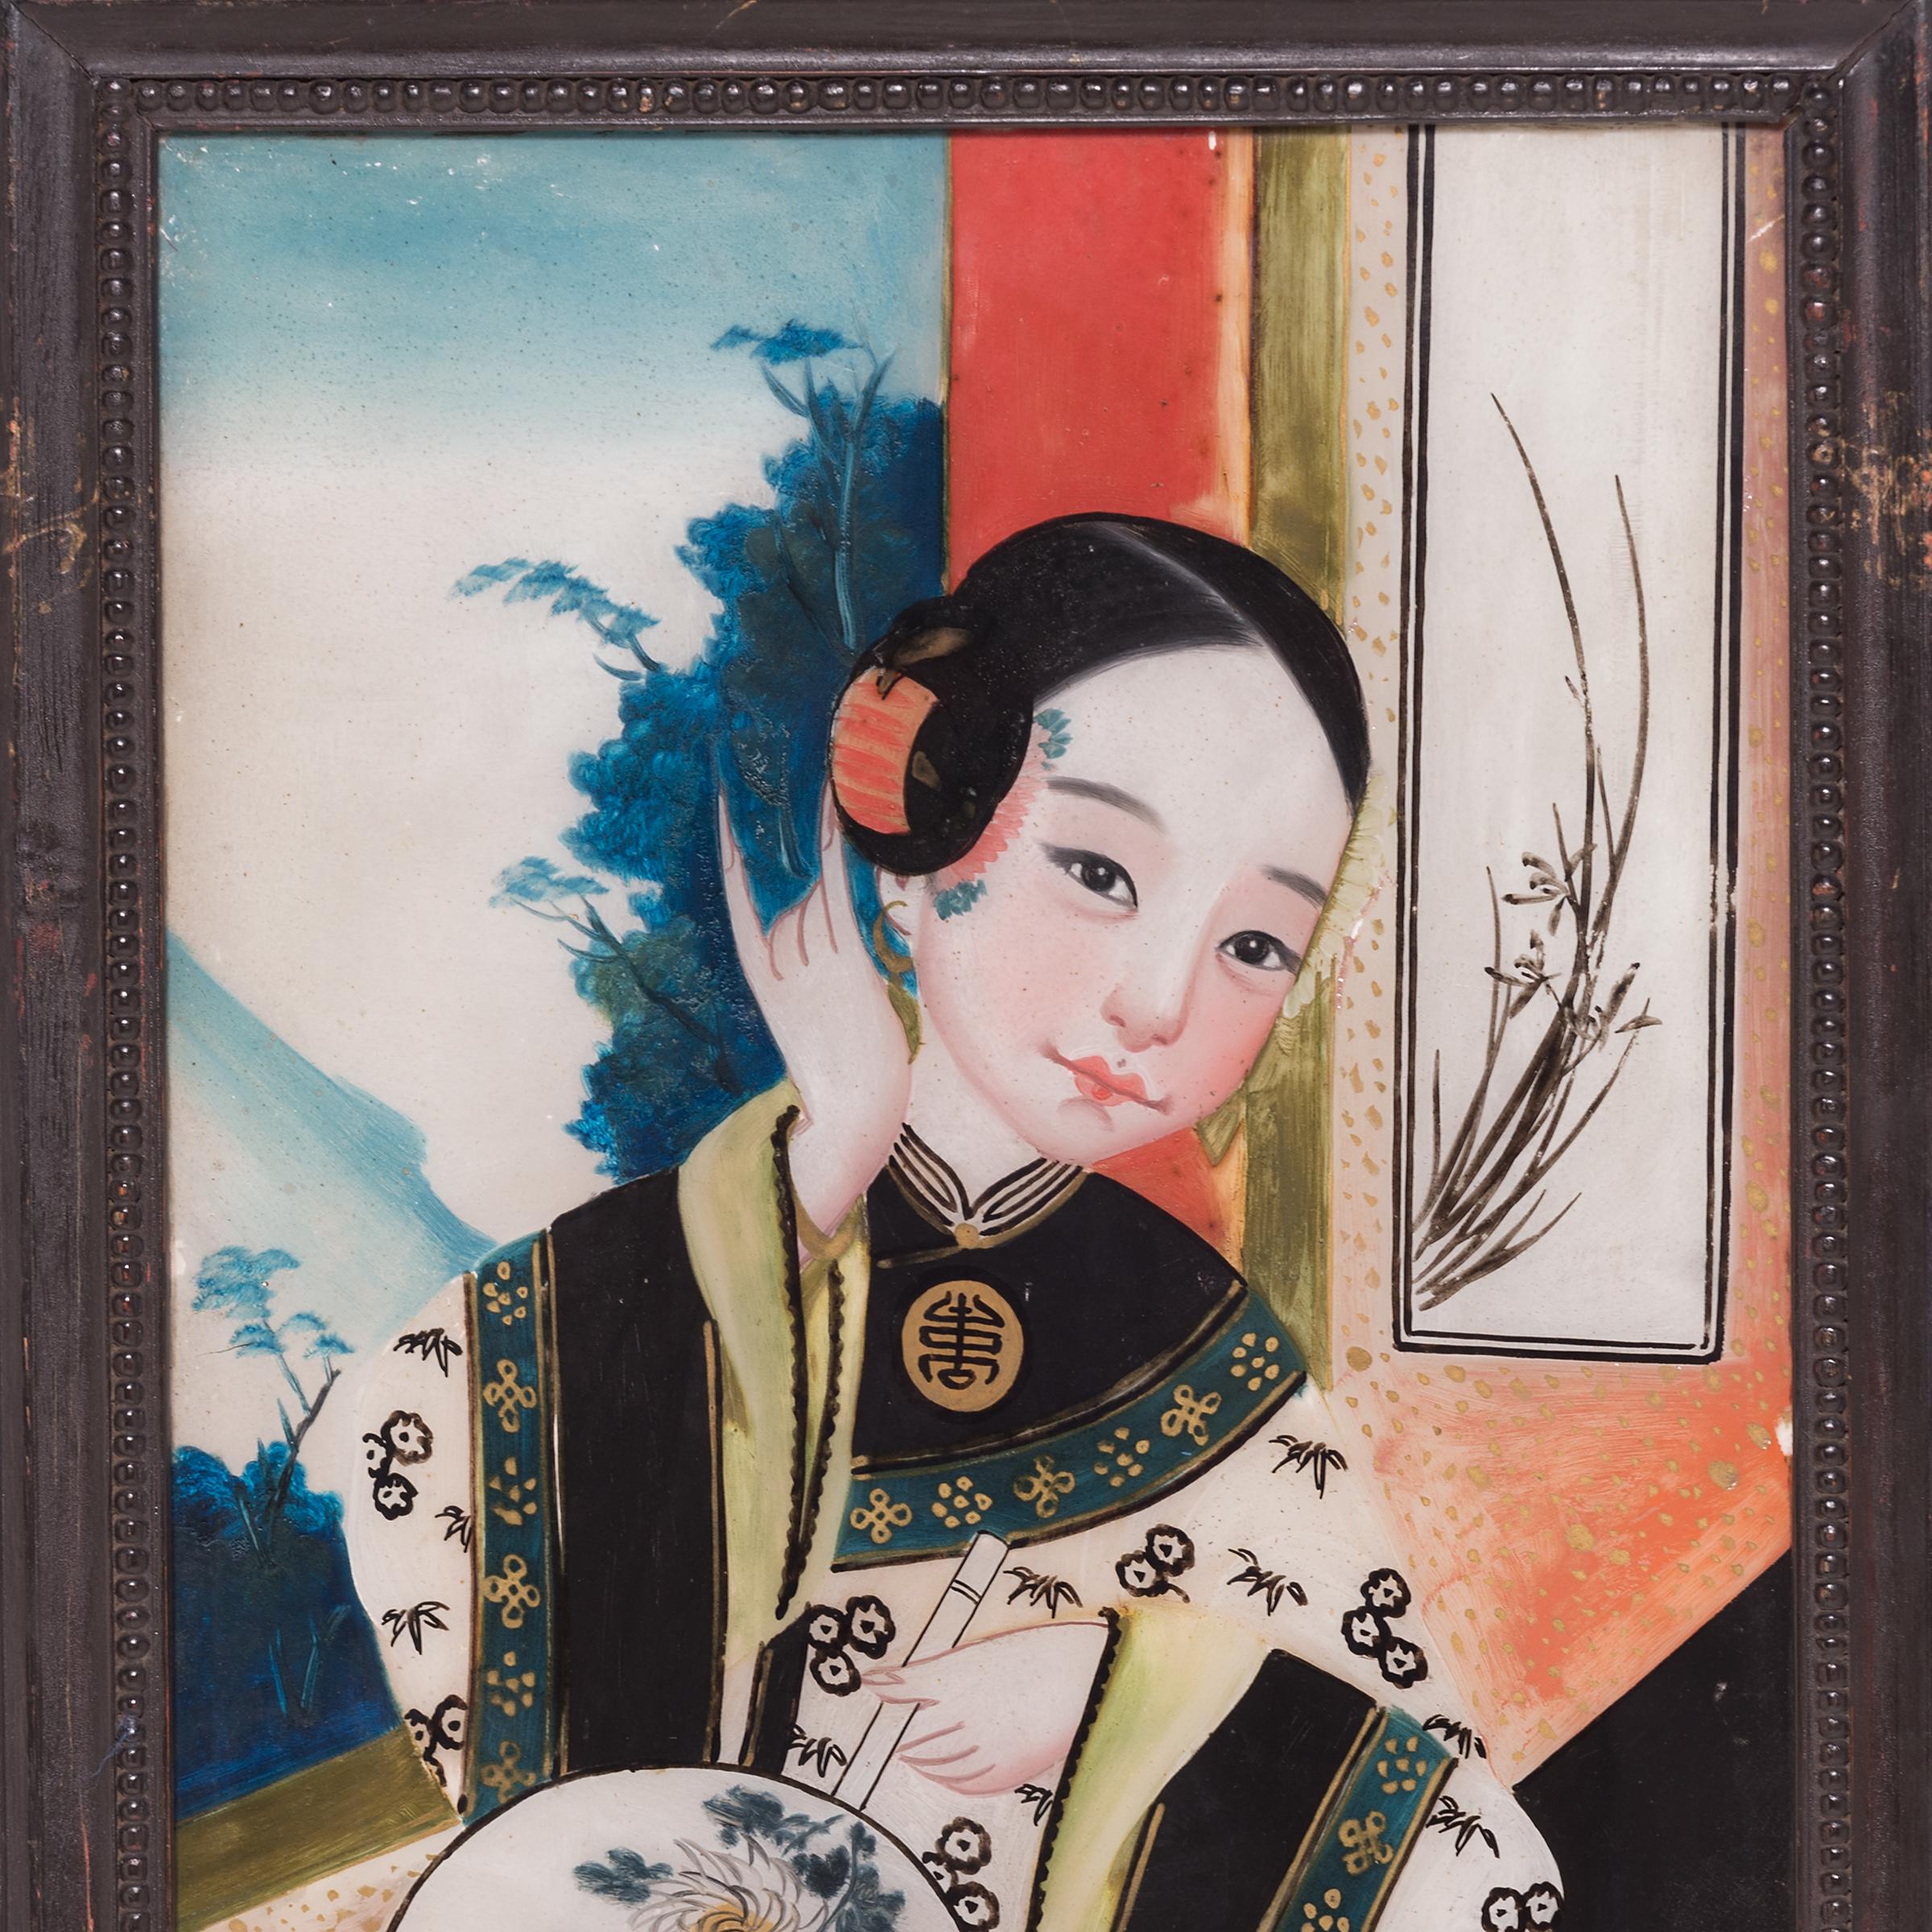 Dieses Porträt einer jungen Frau ist ein bemerkenswertes Beispiel für Hinterglasmalerei mit exquisiten Details und leuchtenden Farben. Um dem fertigen Werk einen subtilen dreidimensionalen Effekt zu verleihen, muss der Künstler beim Malen auf der